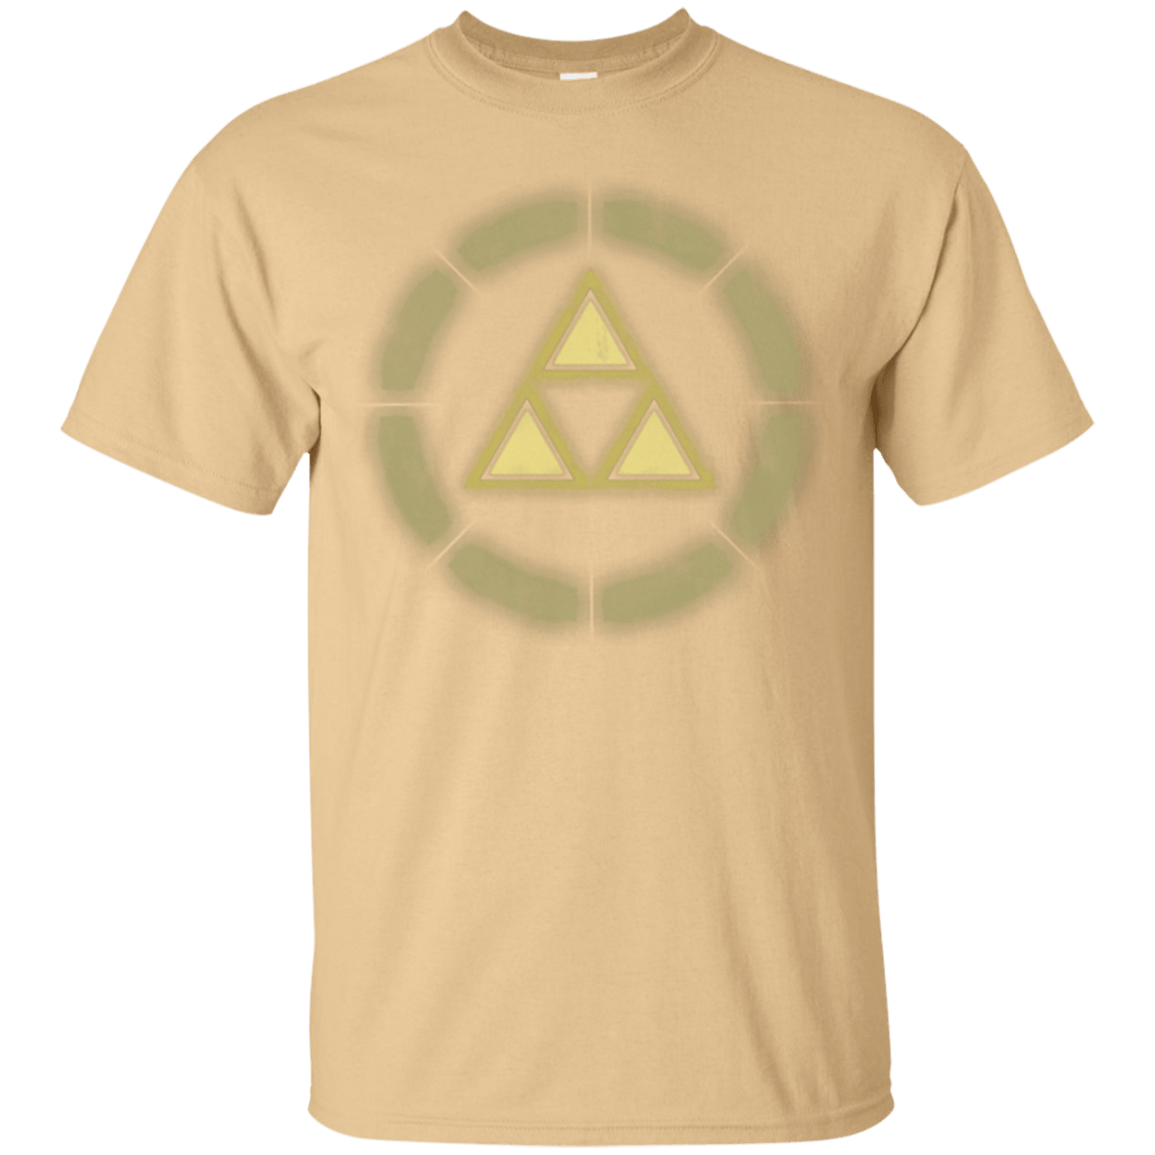 T-Shirts Vegas Gold / Small Iron force T-Shirt